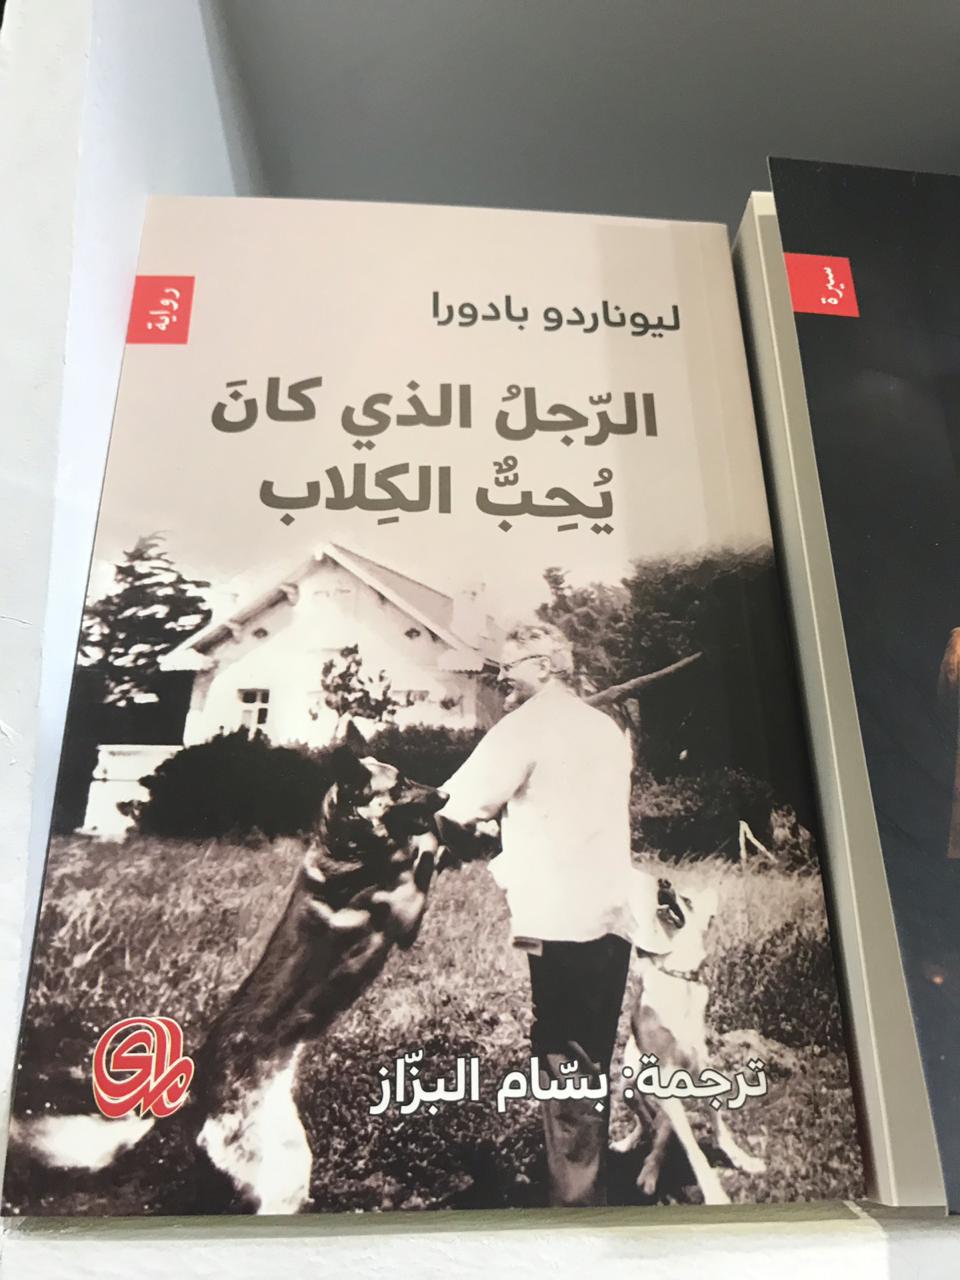 الكتب الأكثر مبيعا فى معرض القاهرة للكتاب (9)